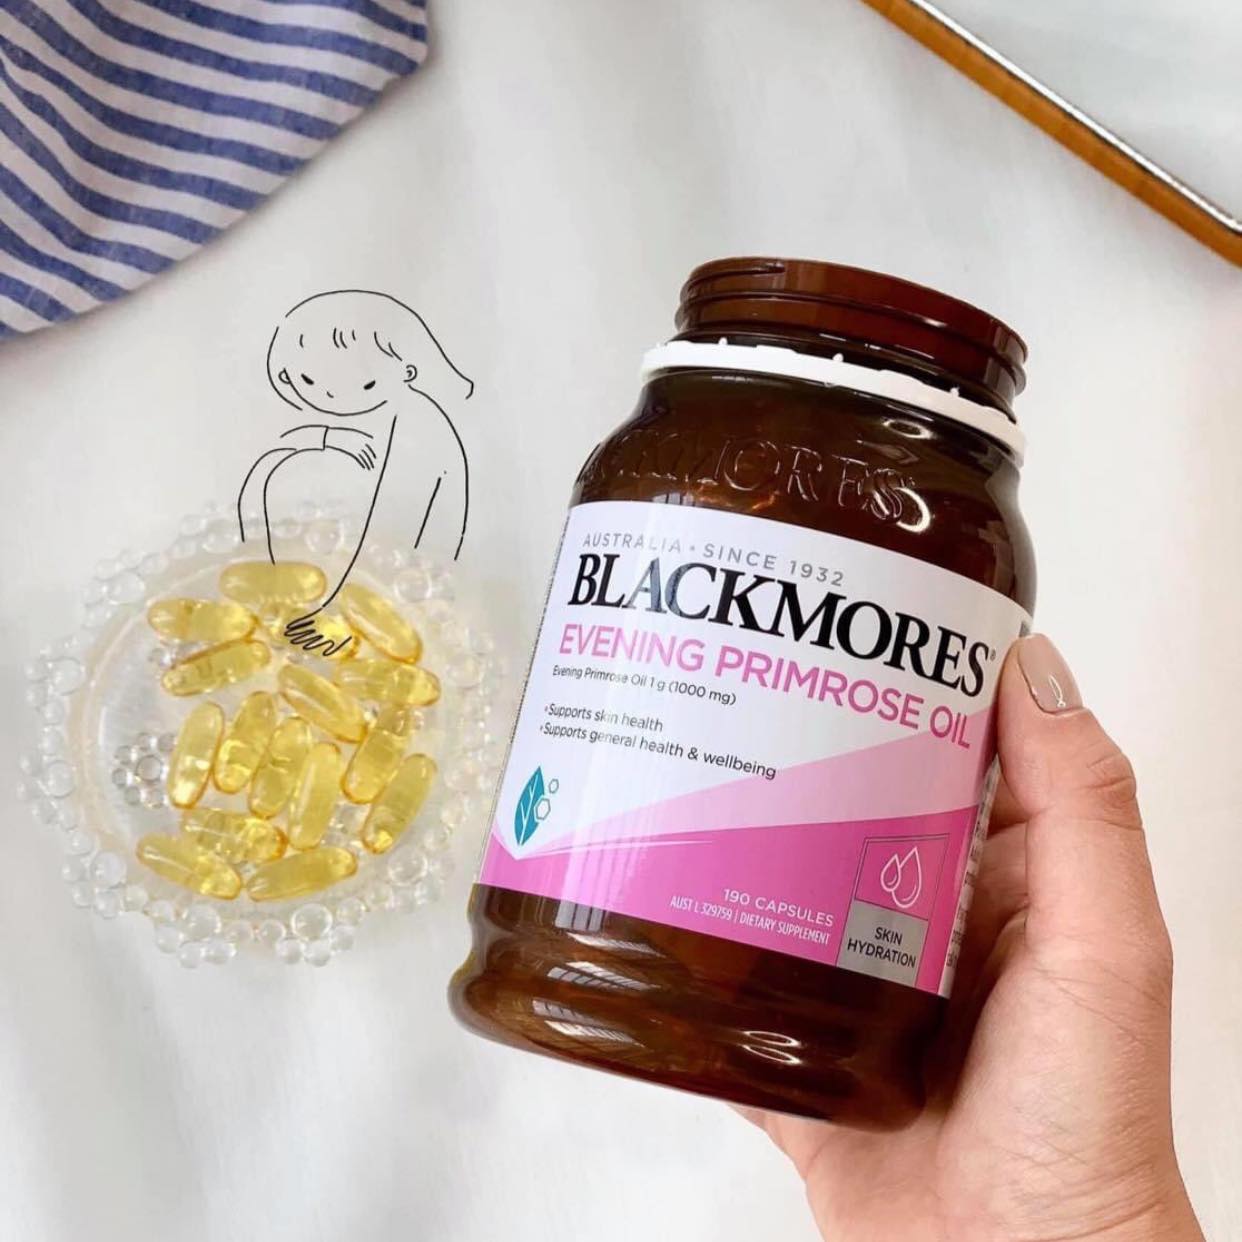 Blackmores – Evening Primrose Oil - sử dụng như thế nào - nó là gì - có tốt không - giá bao nhiều